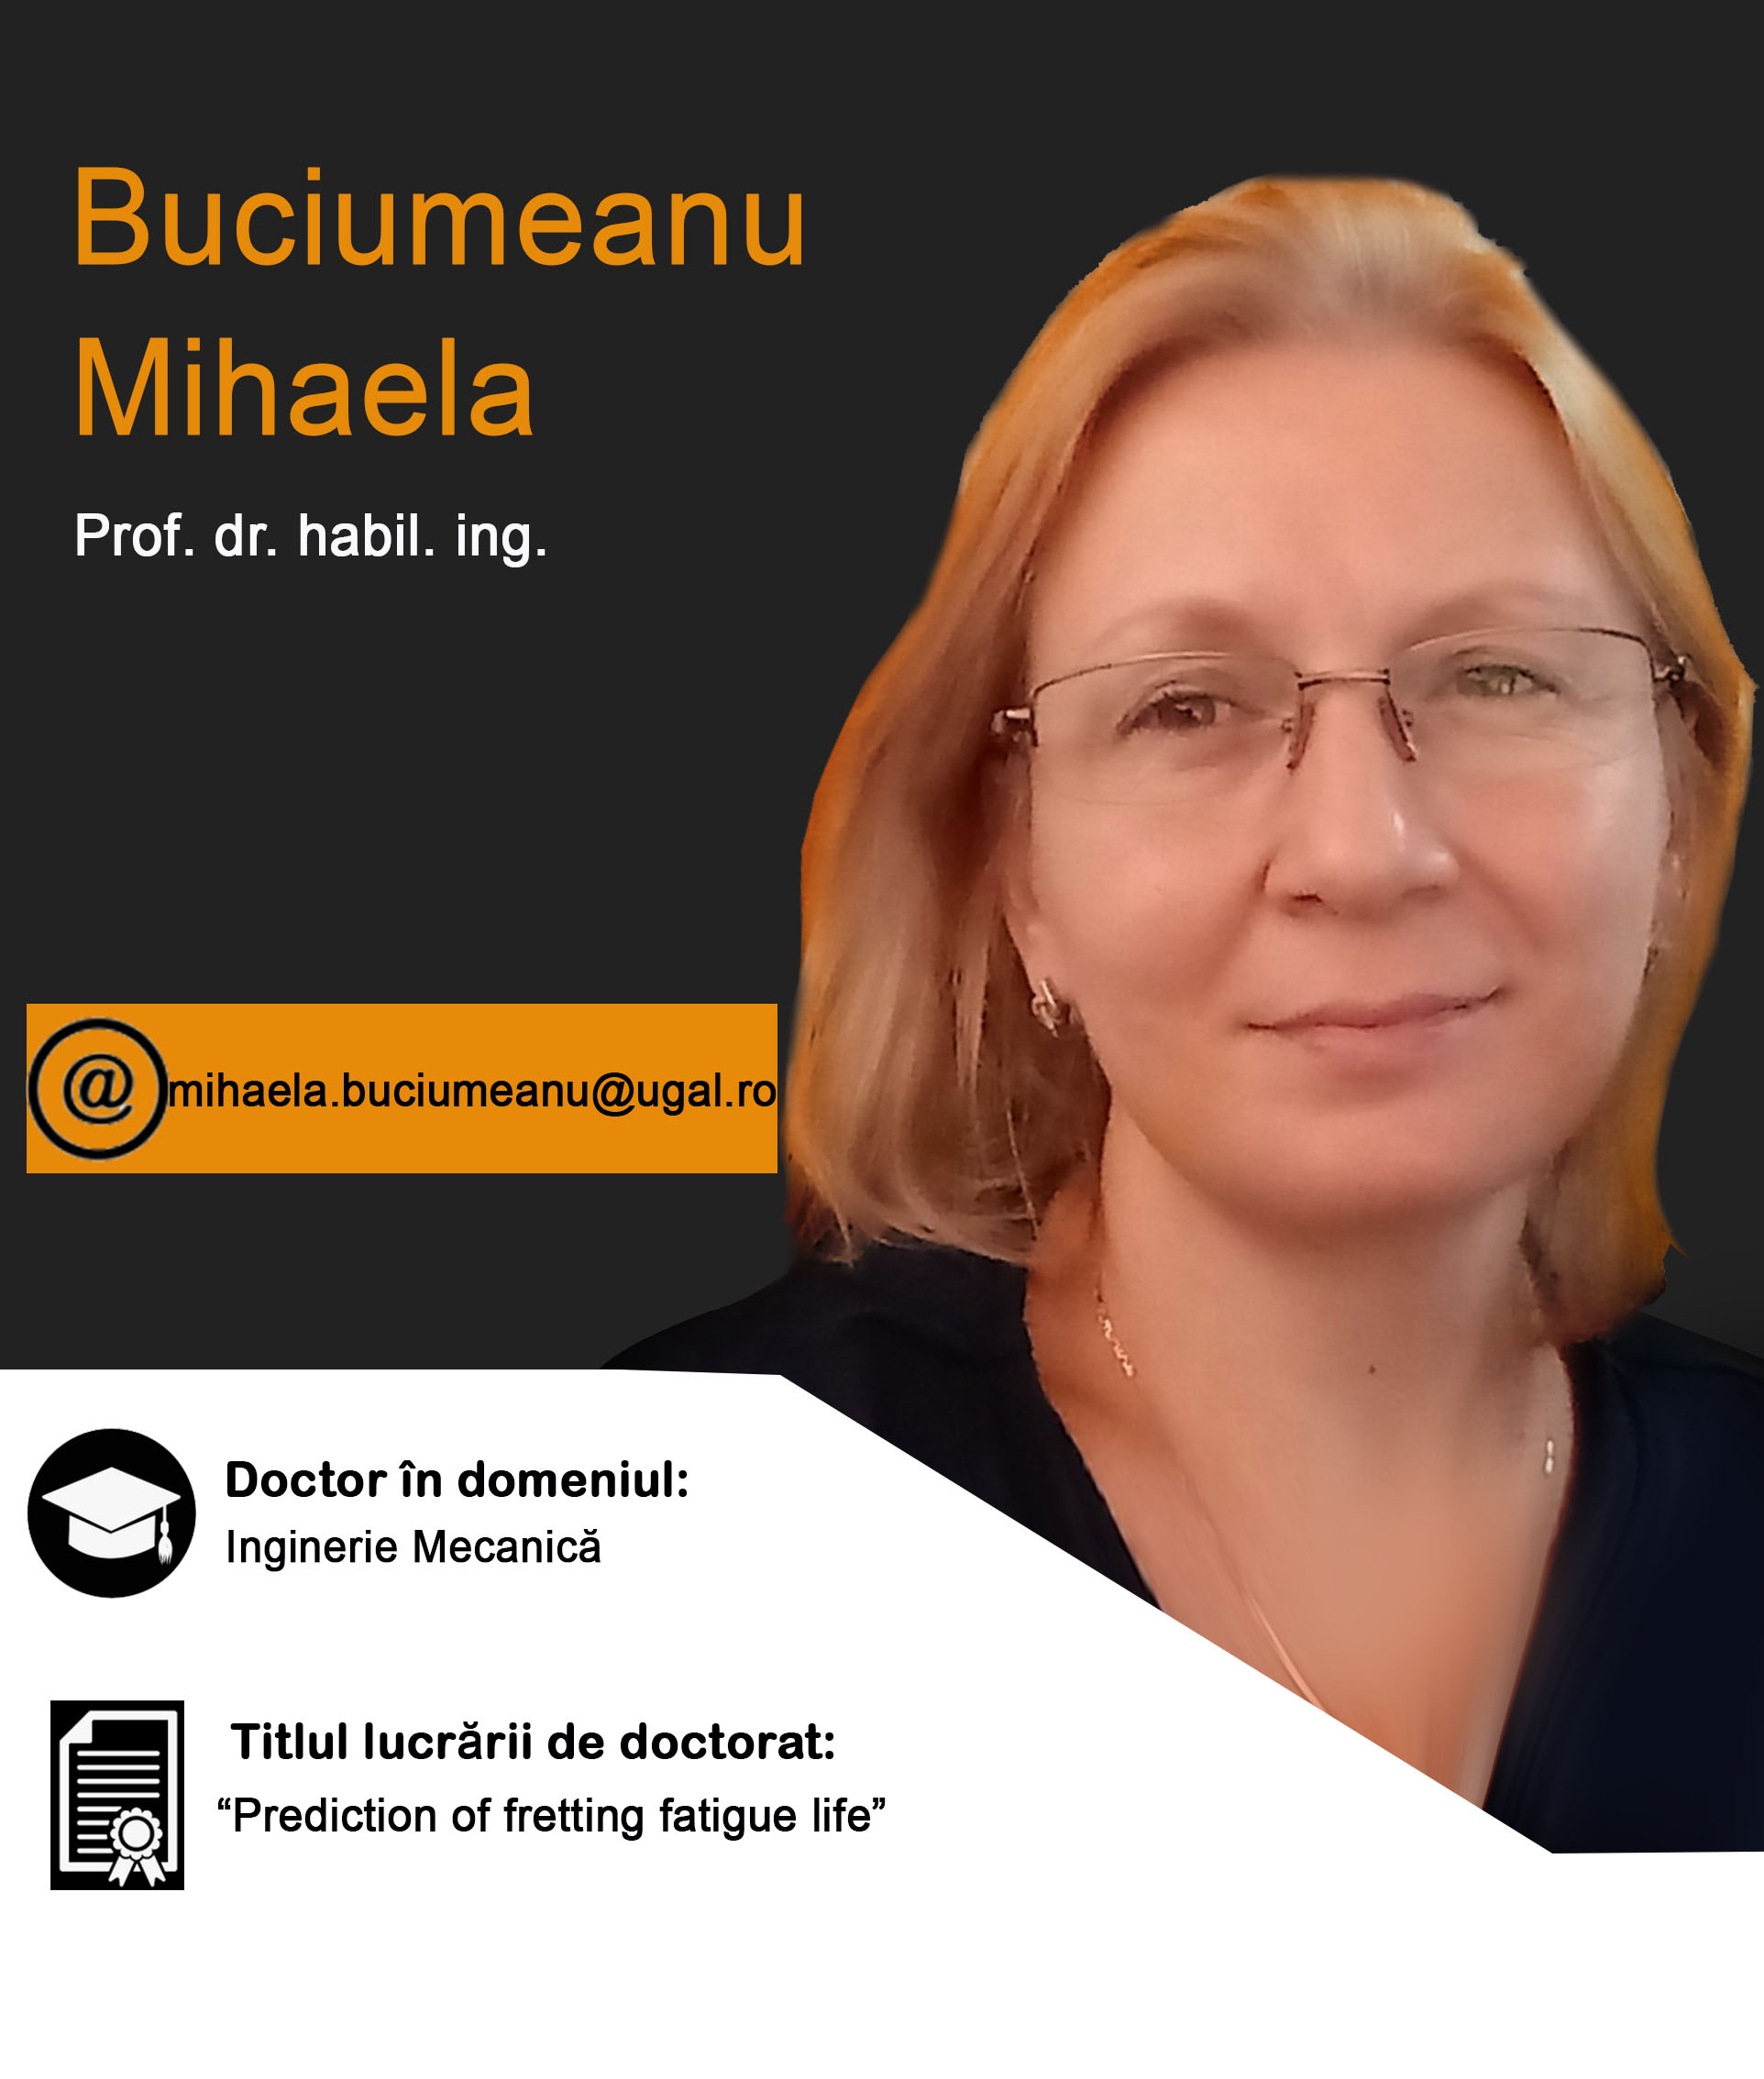 Mihaela Buciumeanu